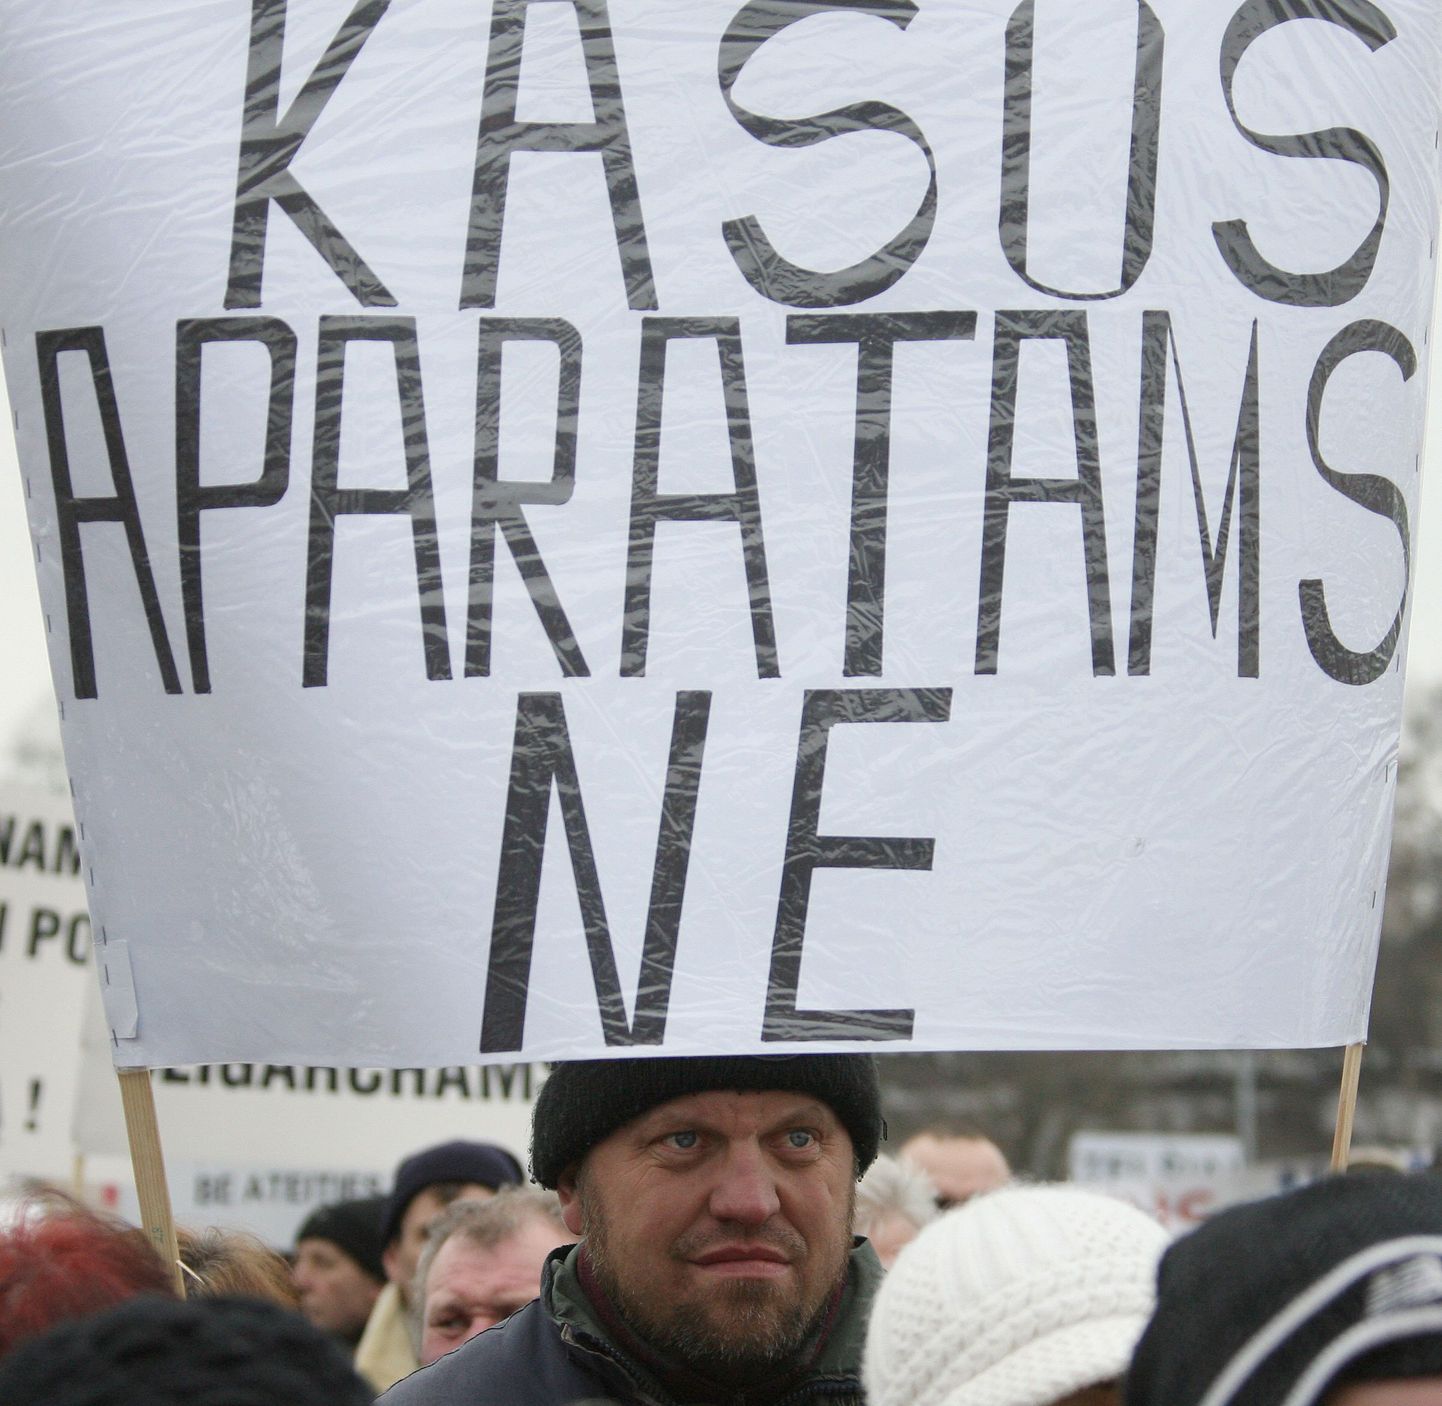 Leedu meeleavaldaja kassaaparaatide vastase plakatiga.